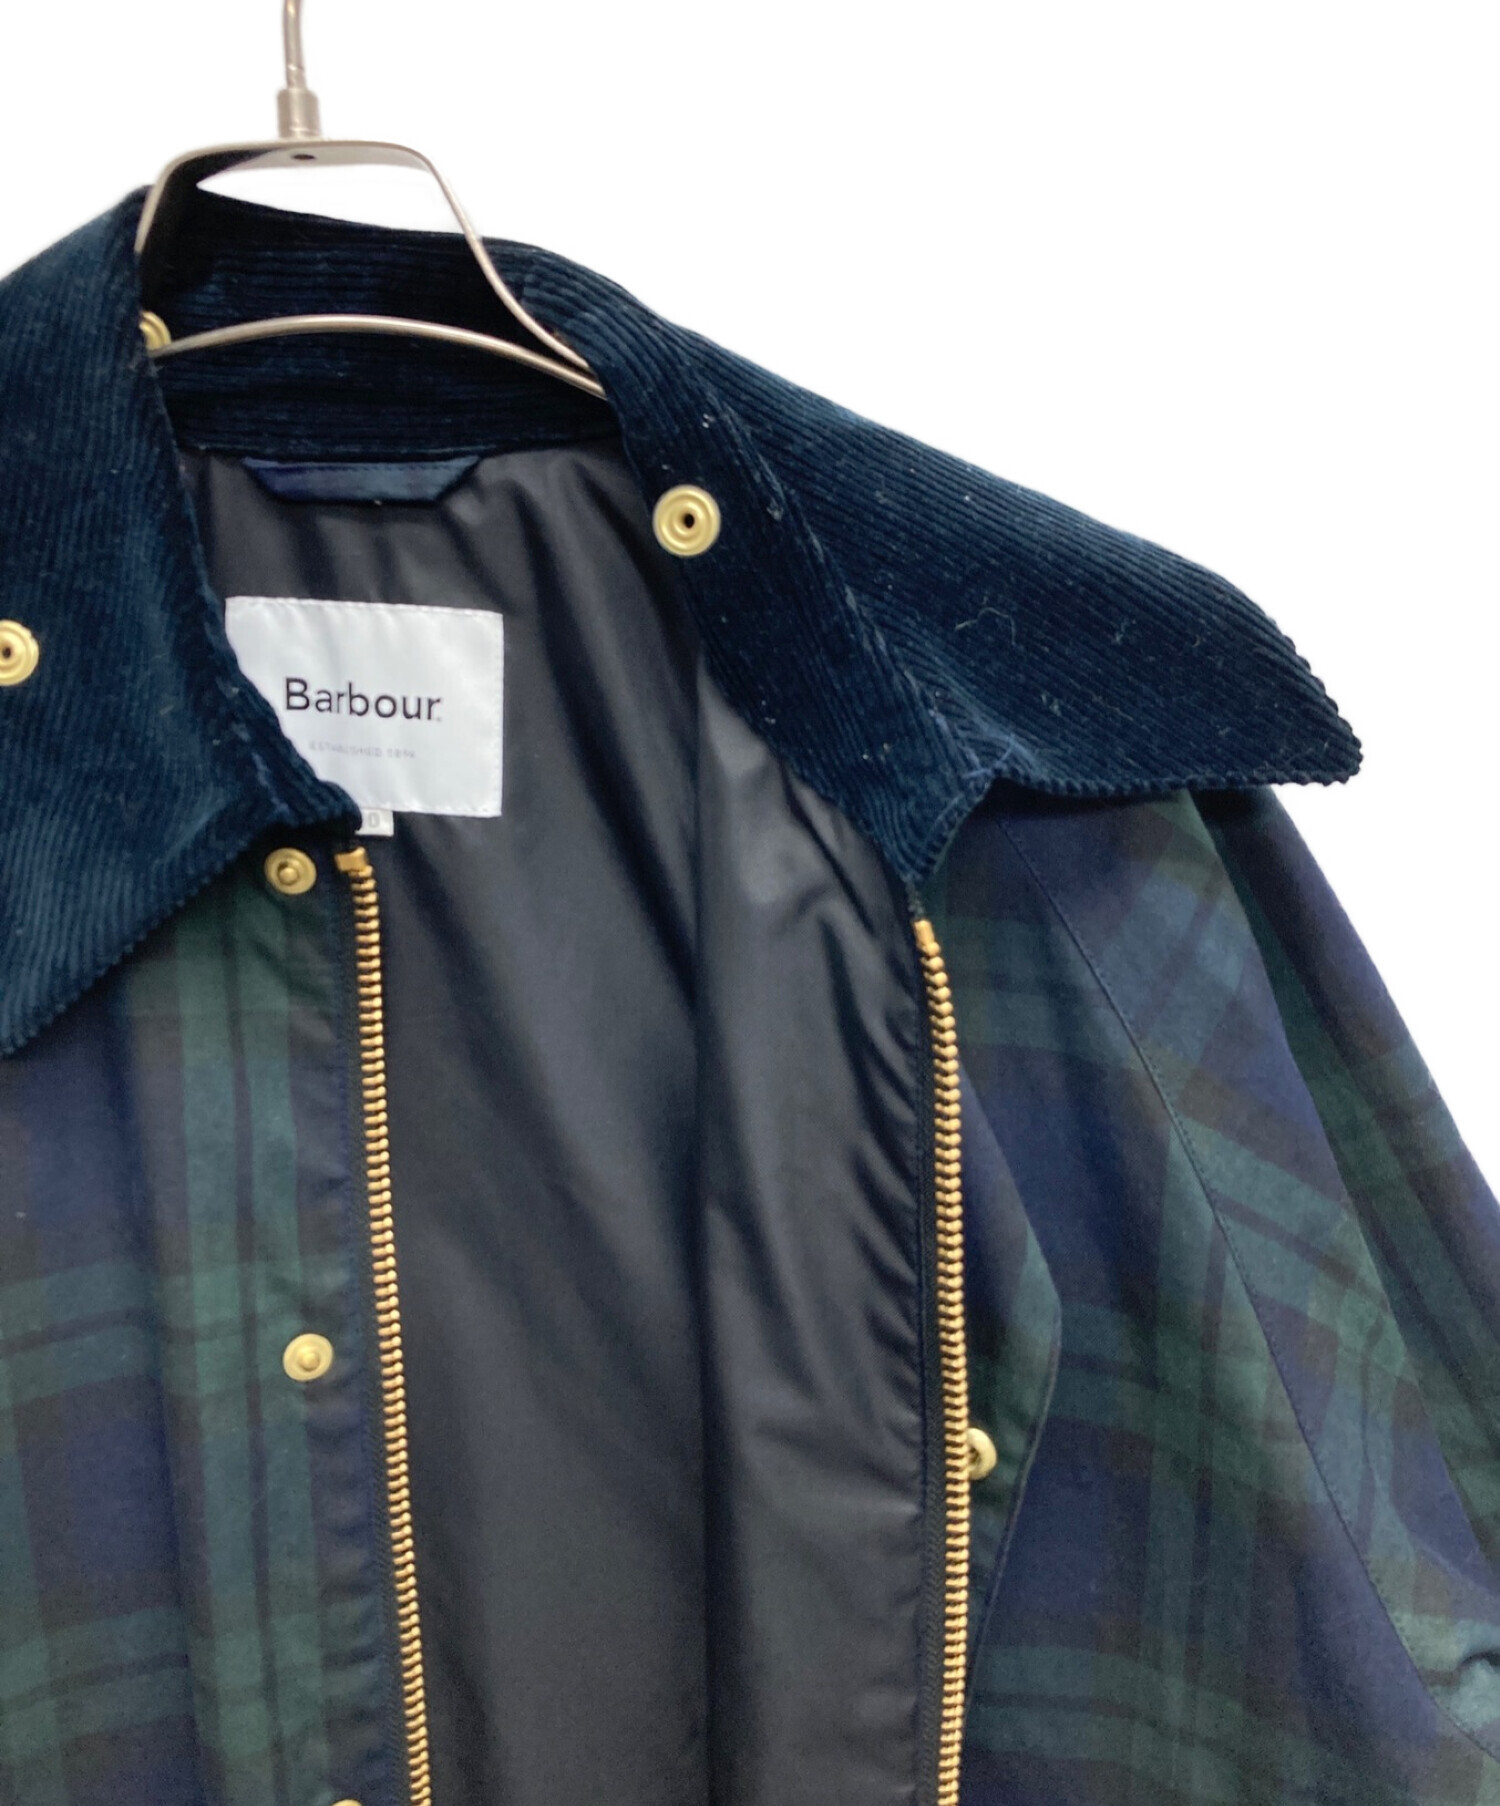 Barbour (バブアー) BEAMS BOY (ビームスボーイ) thornbury jacket グリーン×ネイビー サイズ:10